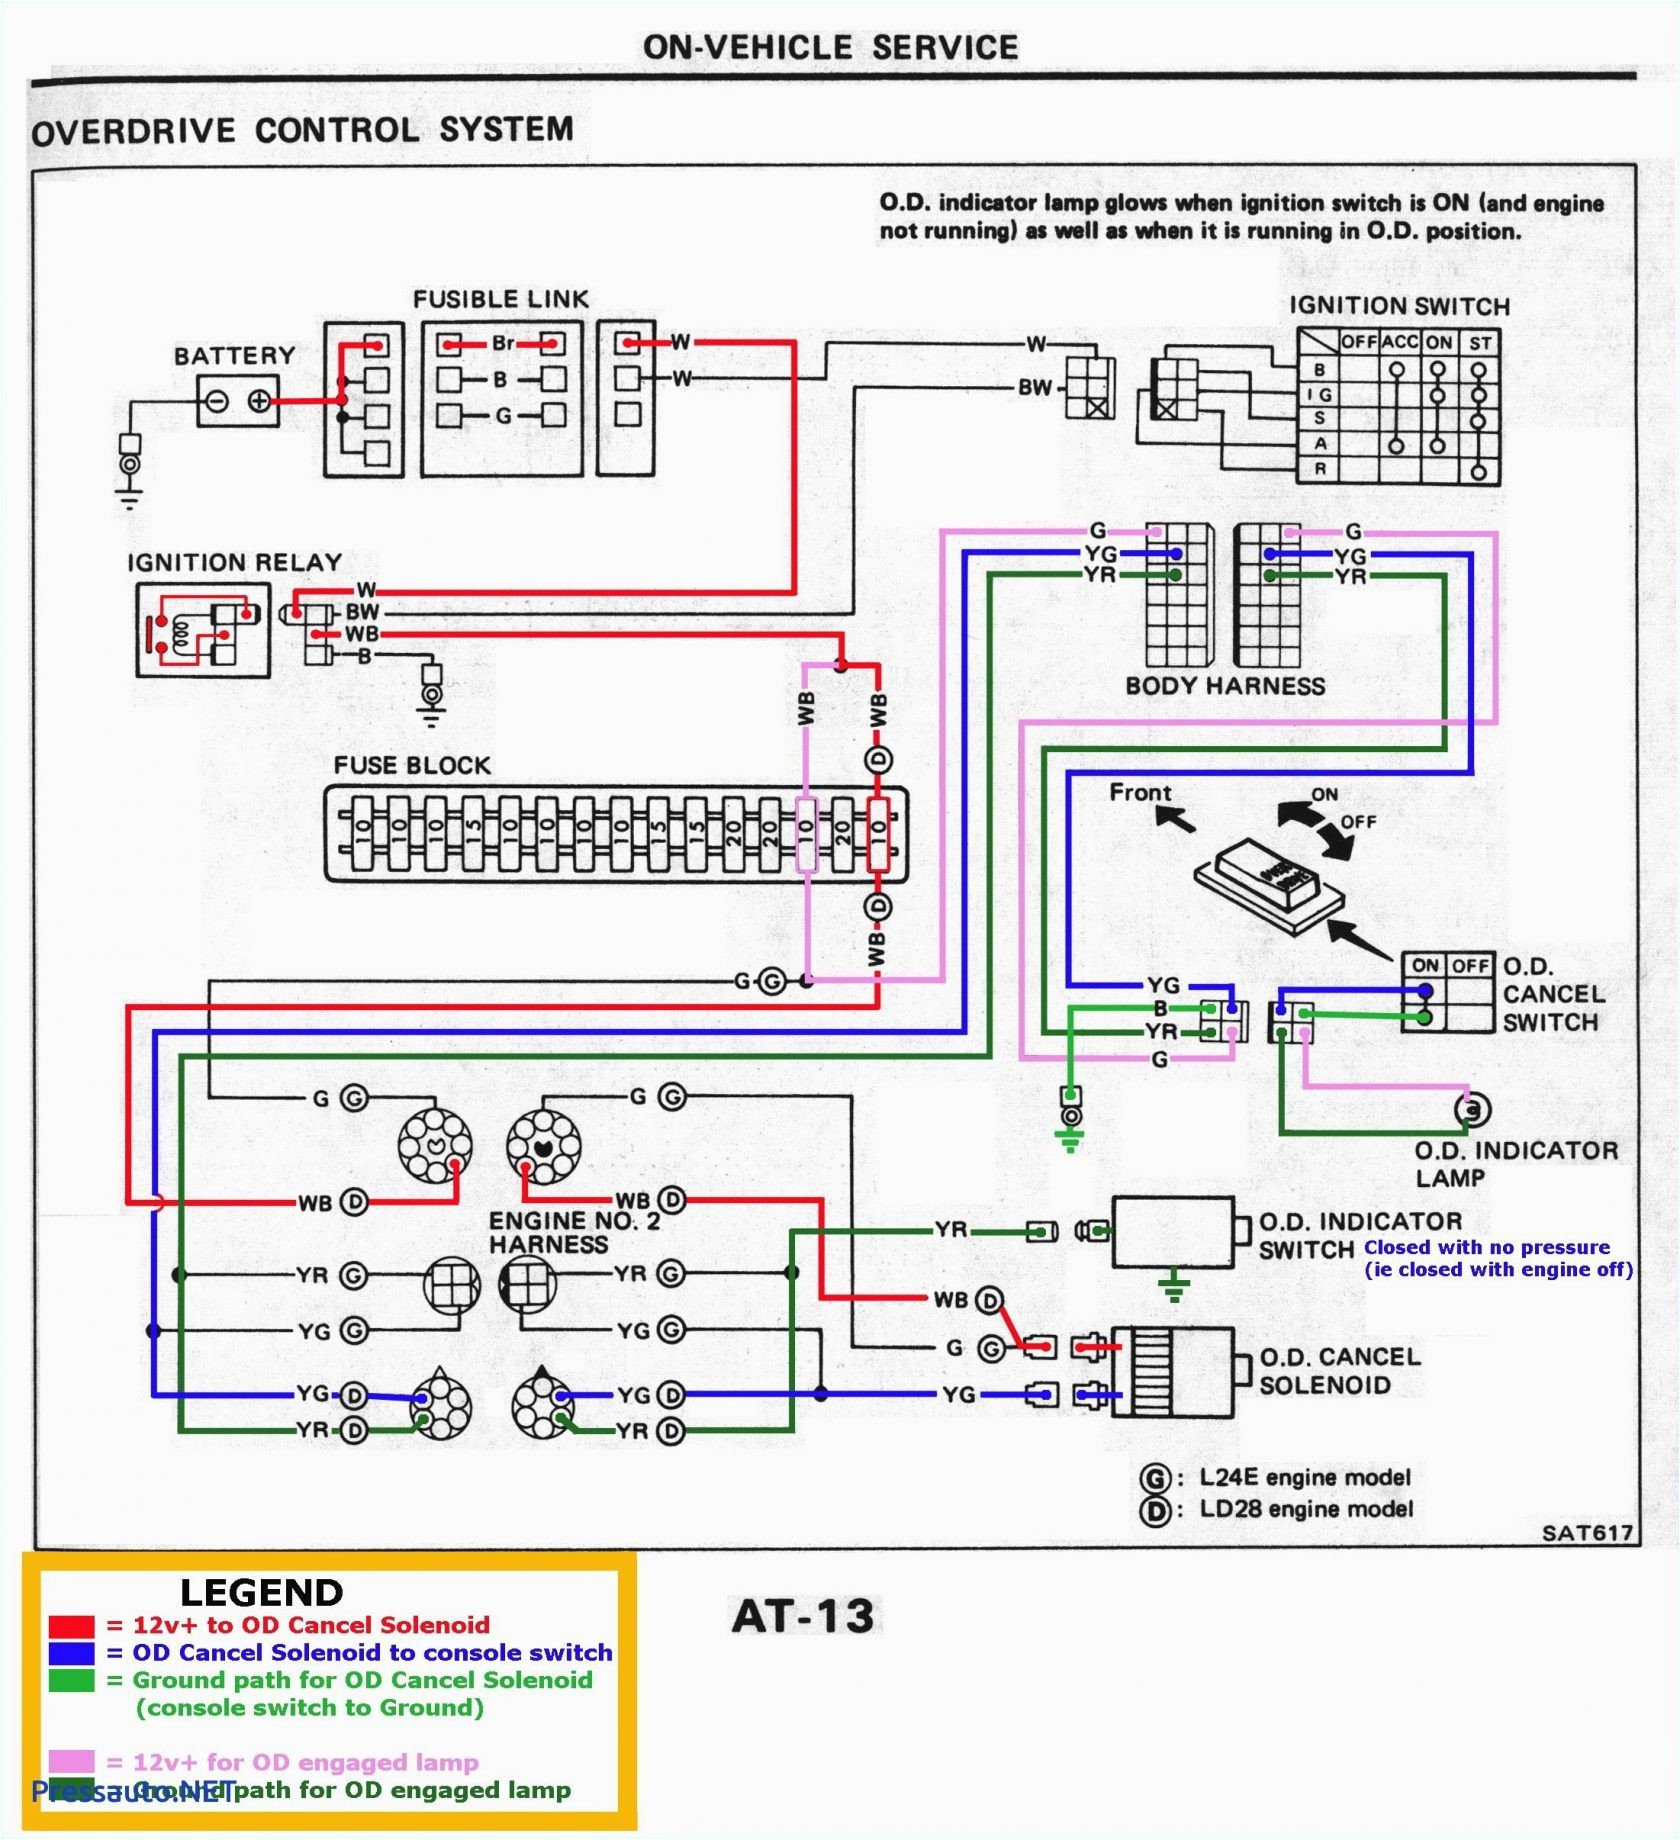 2009 pilot wiring diagram wiring diagram mega 2009 honda pilot wiring diagram 2009 pilot wiring diagram